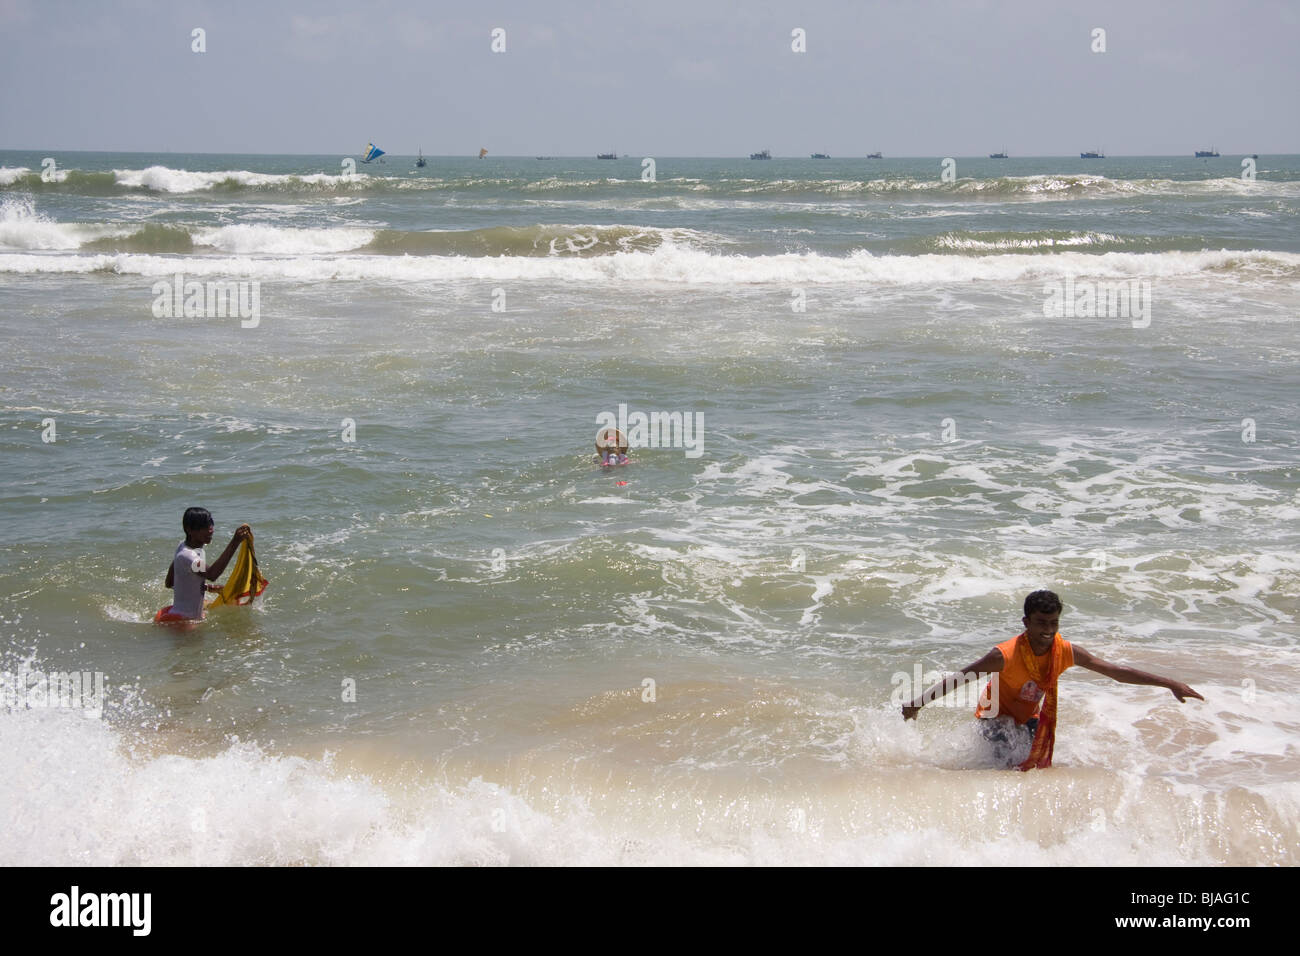 Due giovani uomini di ritorno dal surf dopo immersione di una statua del dio elefantino Ganesh nel surf durante Ganpati a Puri, Orissa. Foto Stock